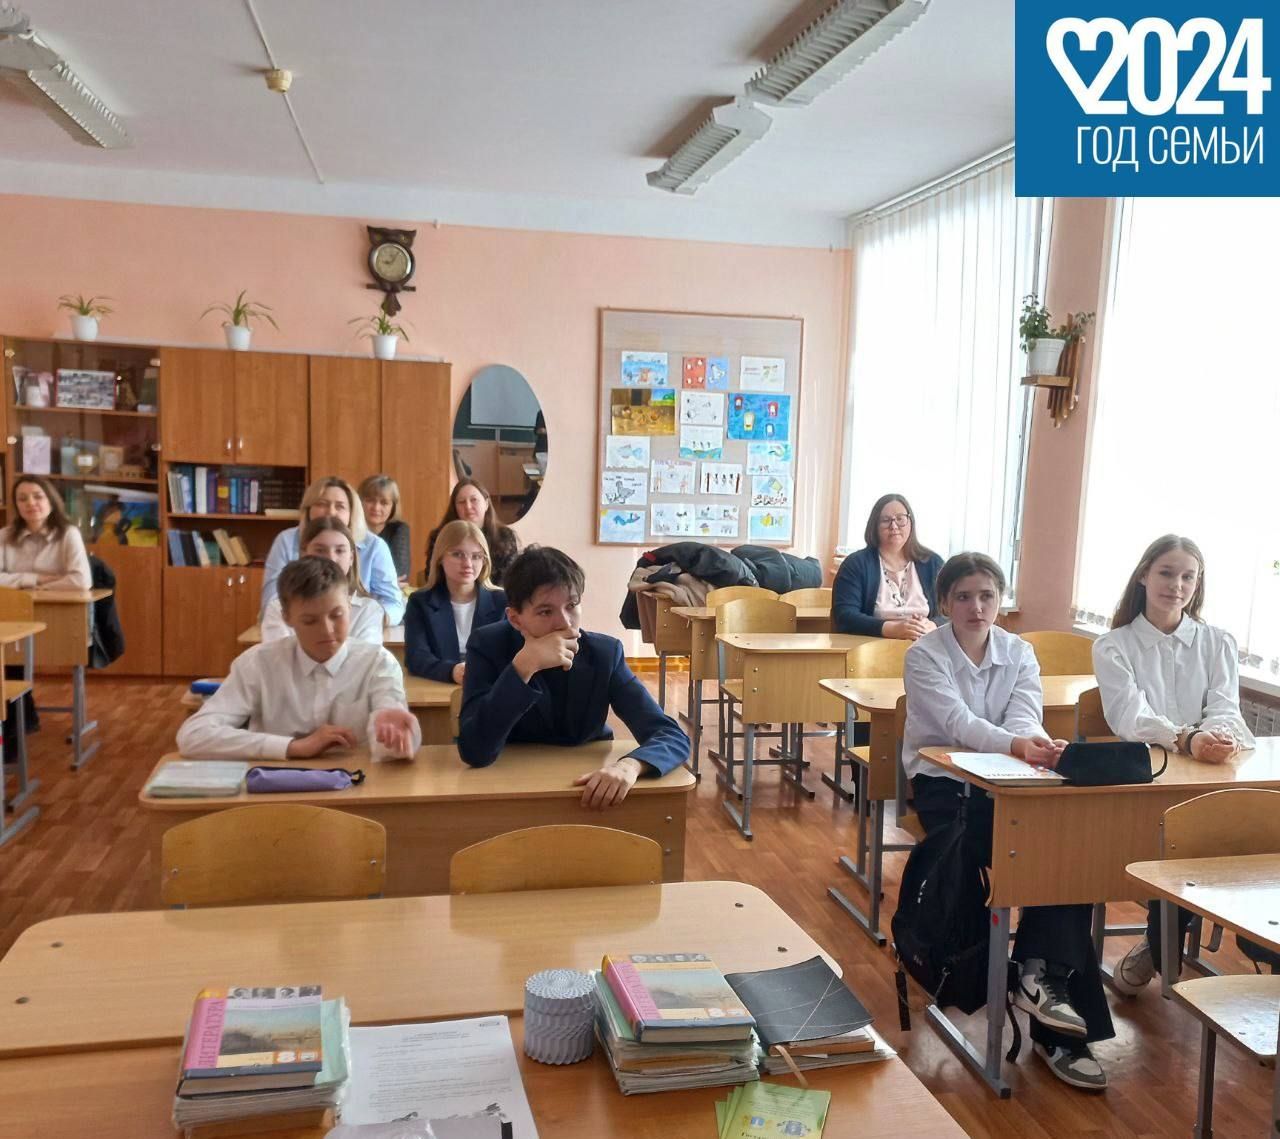 В рамках года семьи Ульяновские юристы просвещают школьников и их родителей о правах и обязанностях